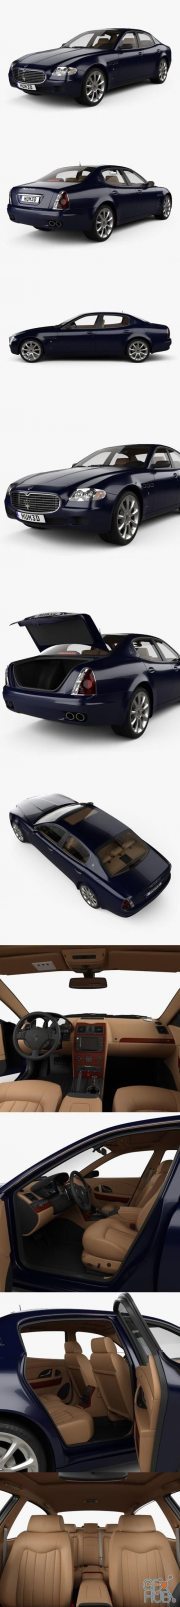 Maserati Quattroporte with HQ interior 2004 car